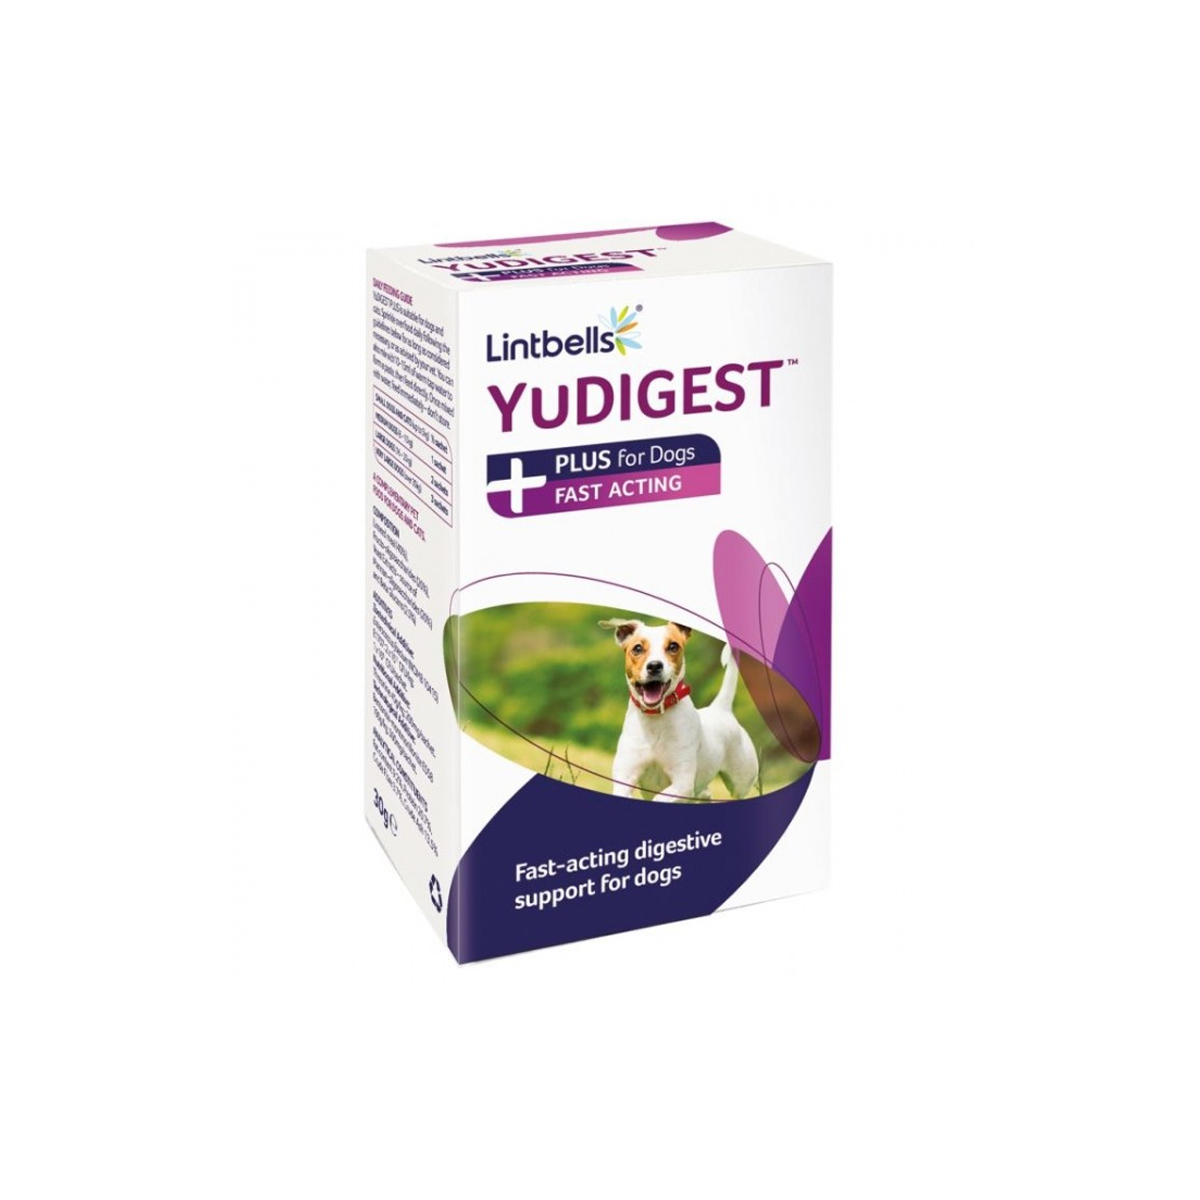 Supliment digestiv pentru caini si pisici YuDIGEST PLUS, 6 plicuri Lintbells